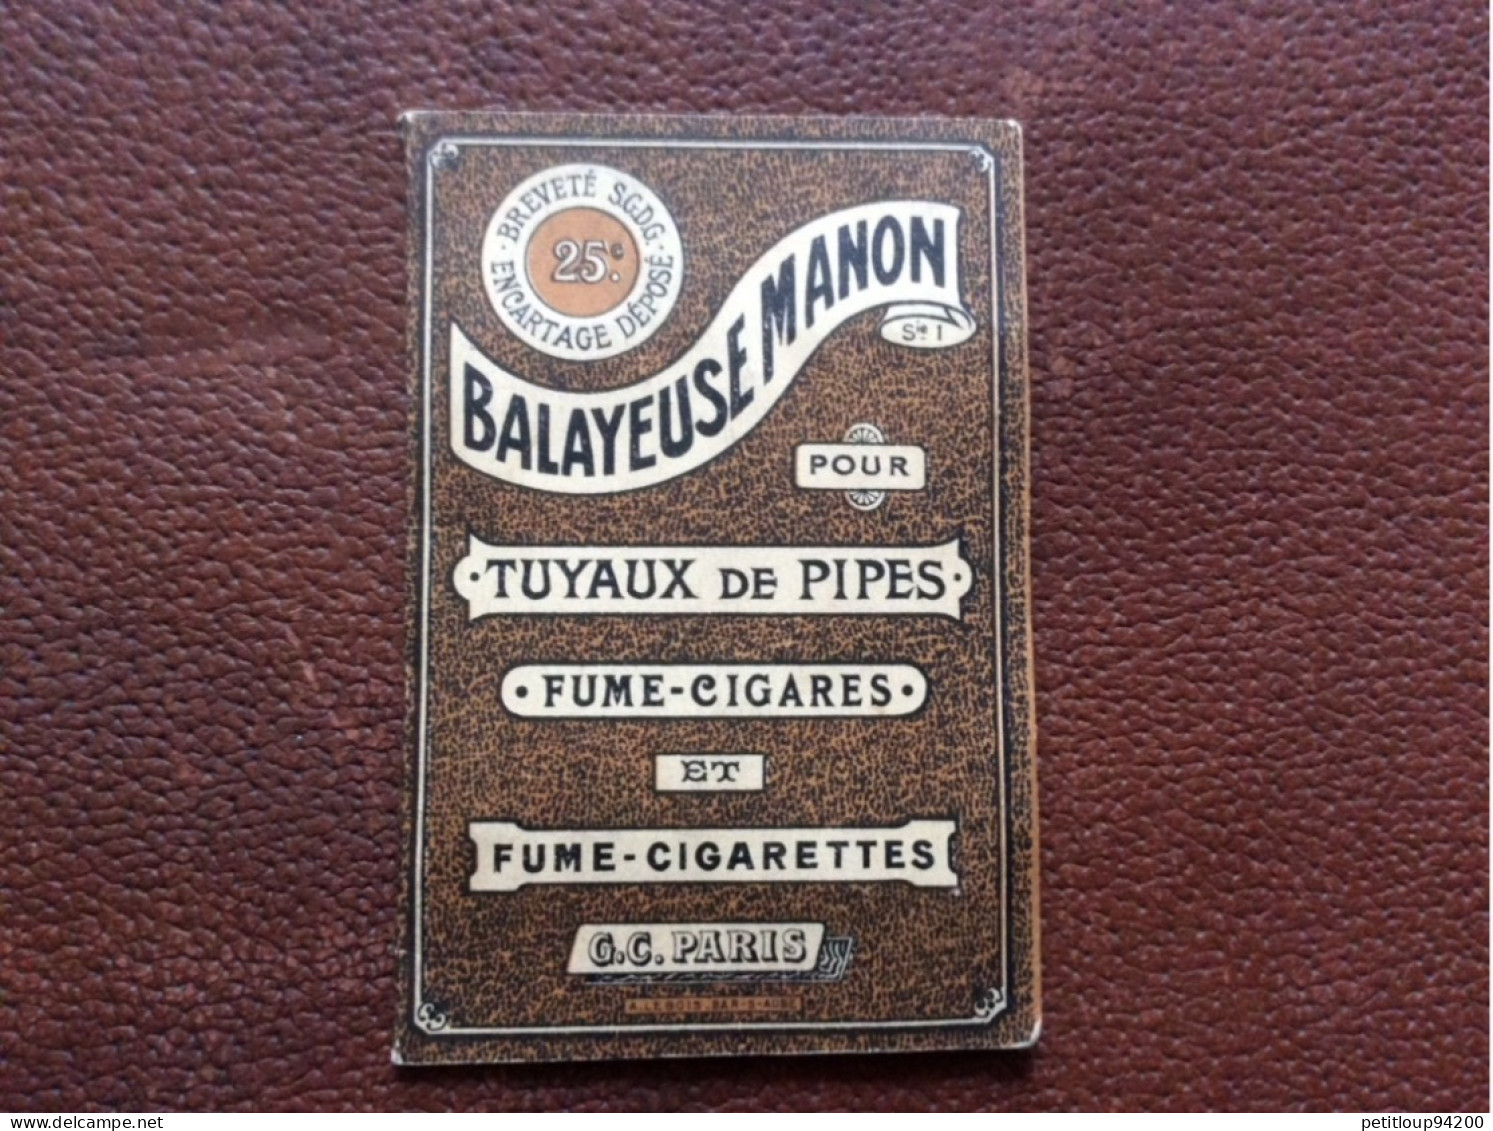 BALAYEUSE MANON  Tuyaux De Pipes  Fume-Cigares  Fume-Cigarettes  G.C  Paris  A.LEBOIS  Bar-s-Aube - Ohne Zuordnung